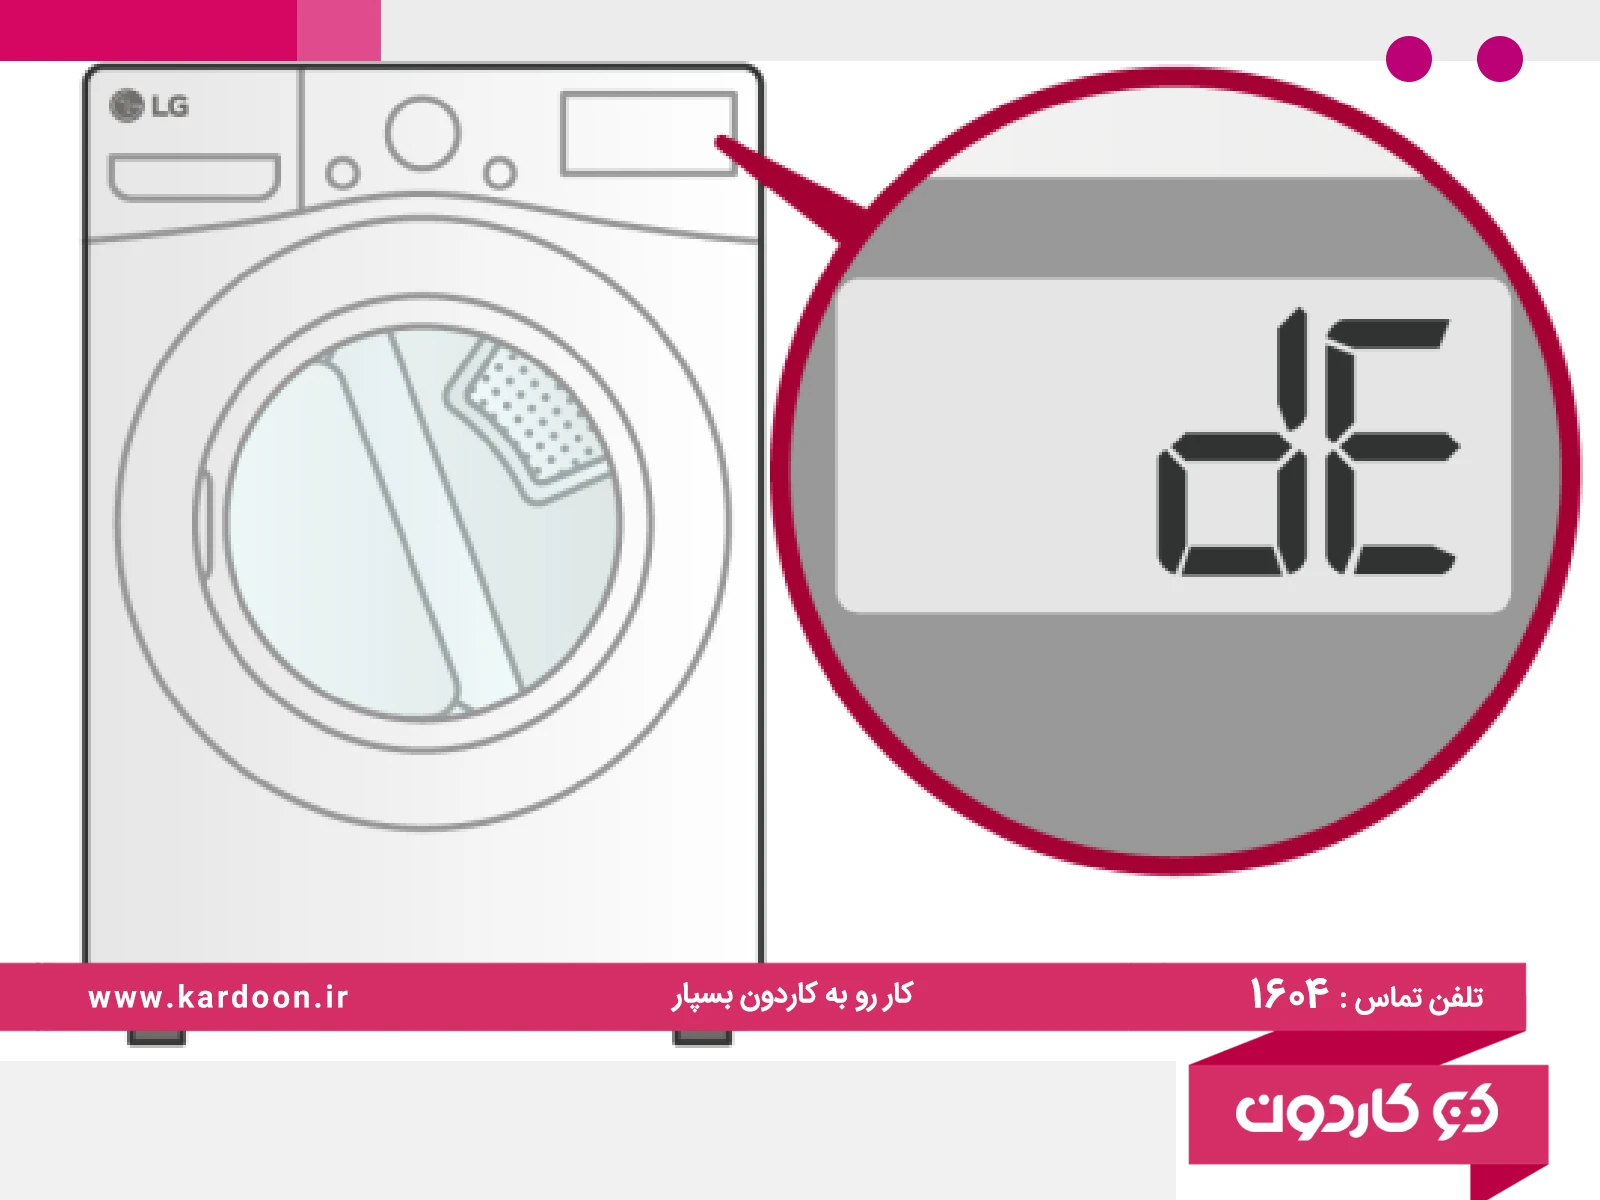 dE error in LG washing machine